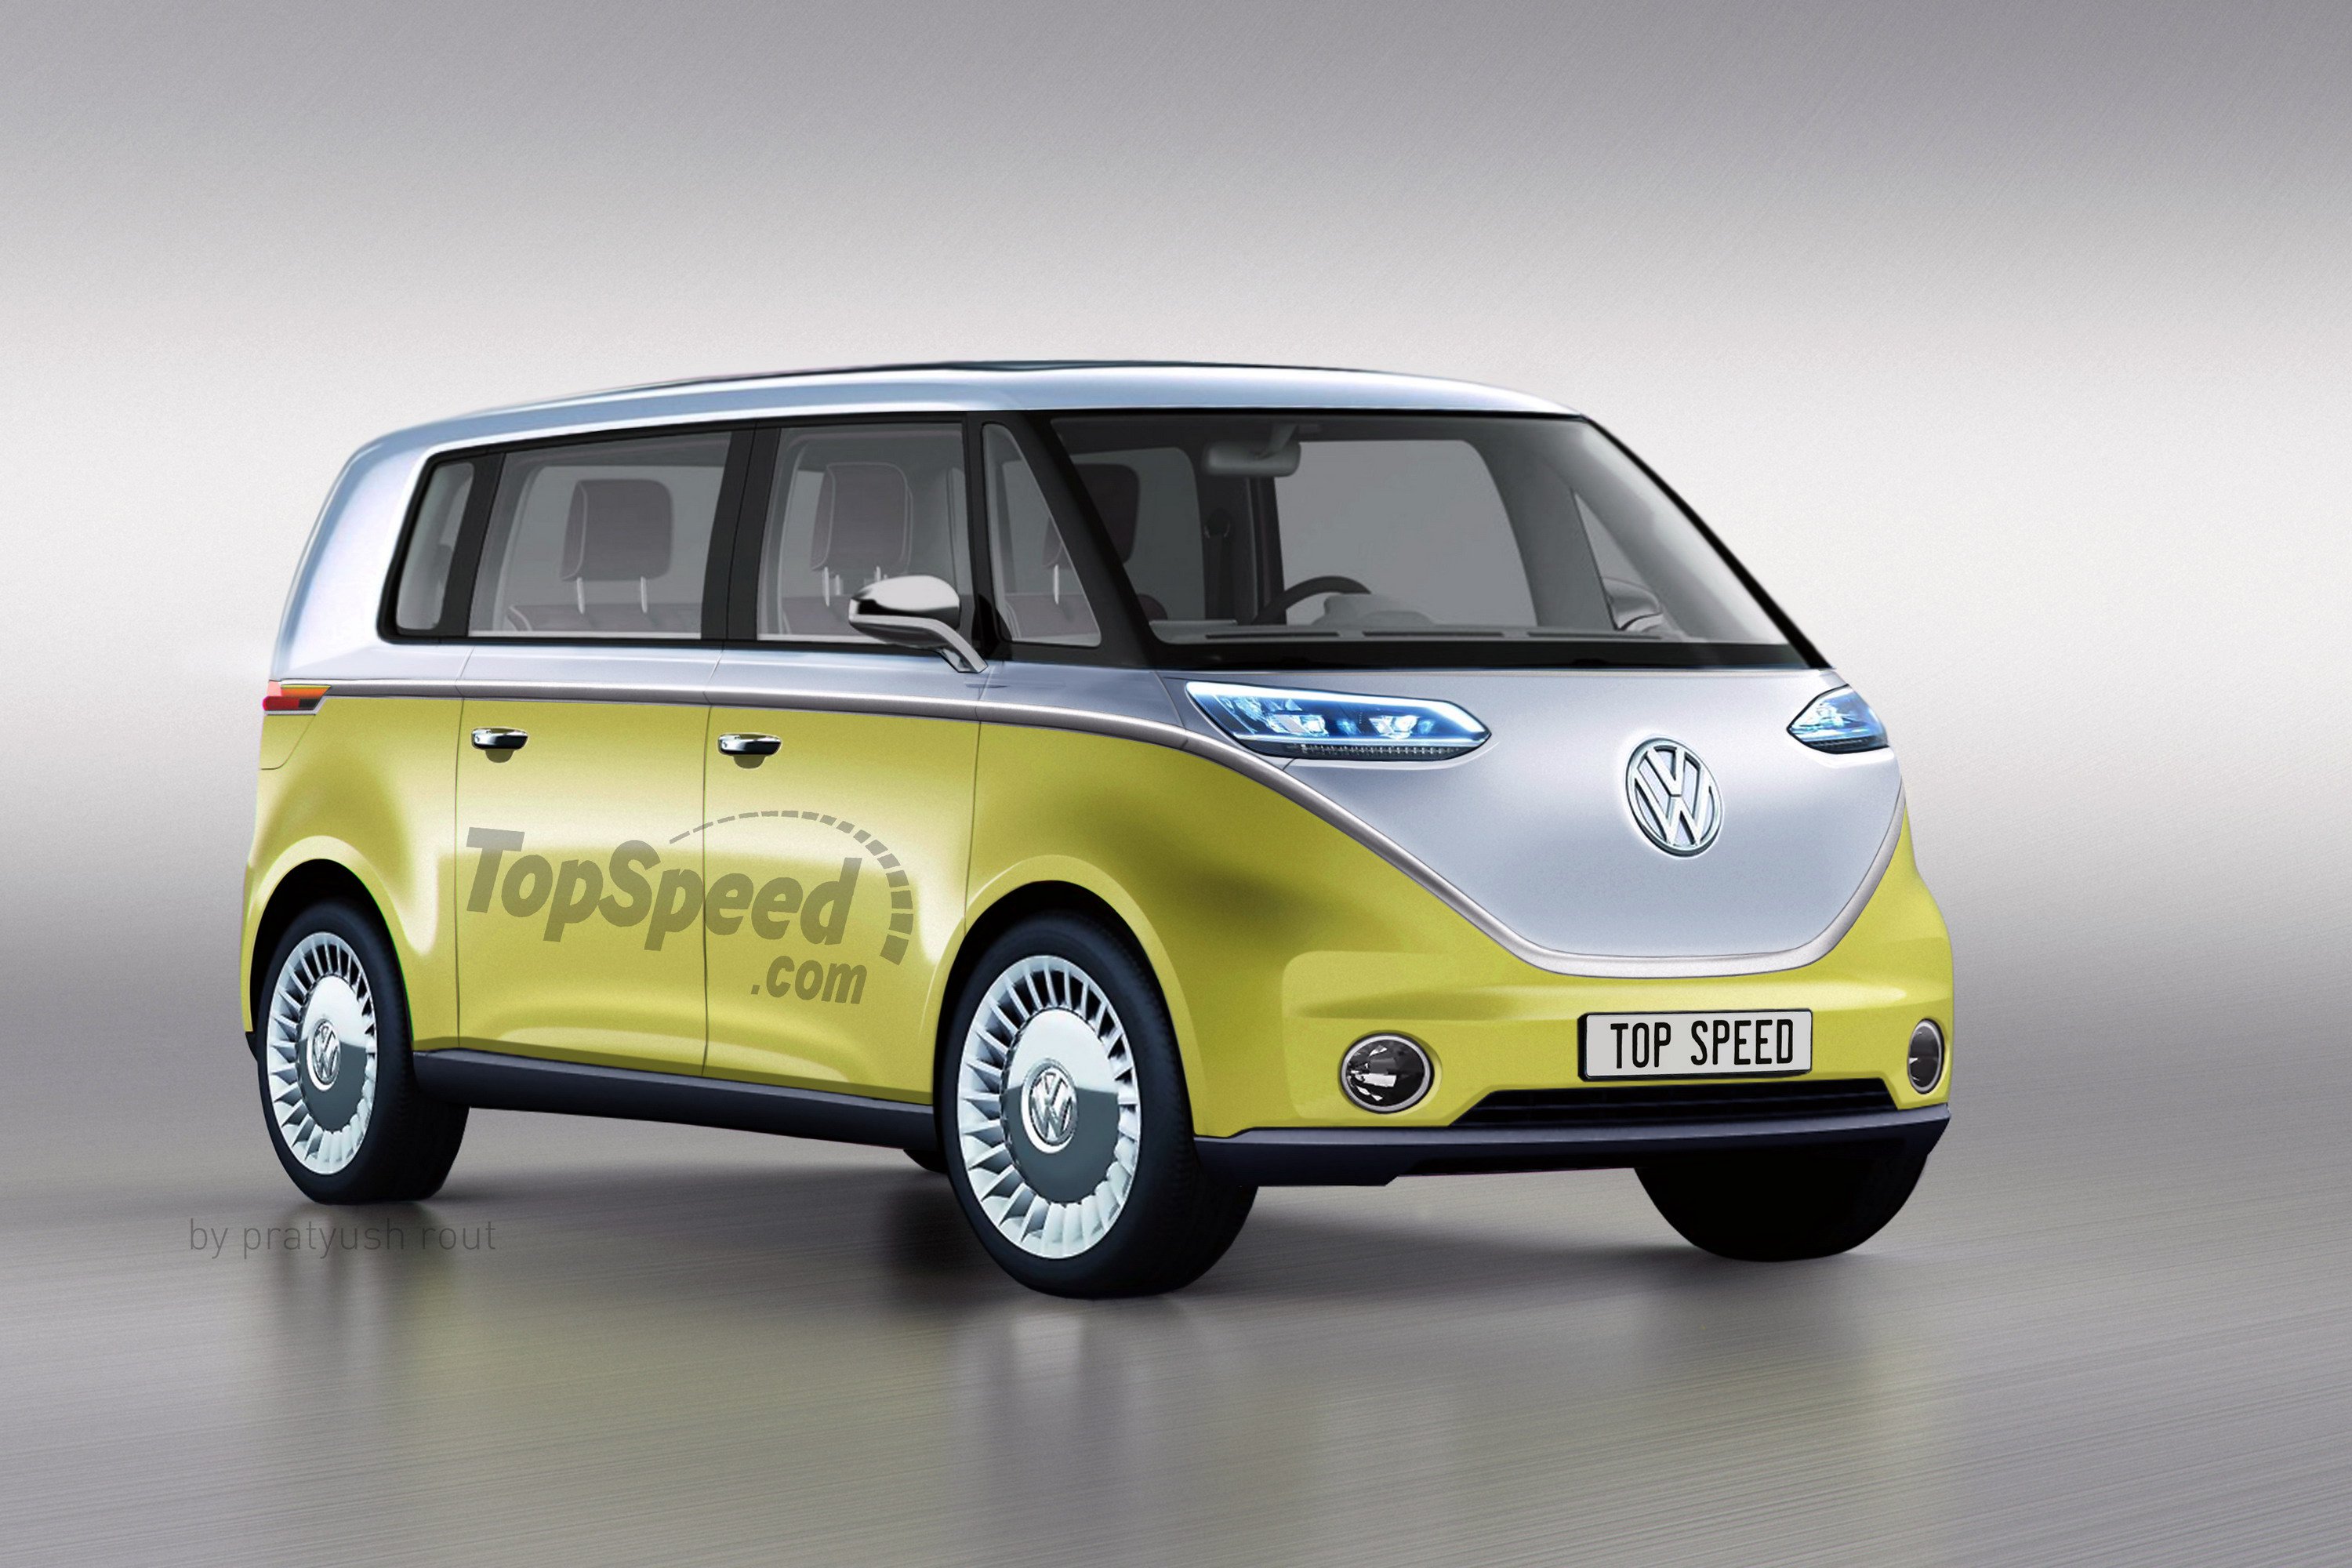 2020 Volkswagen Van | Top Speed